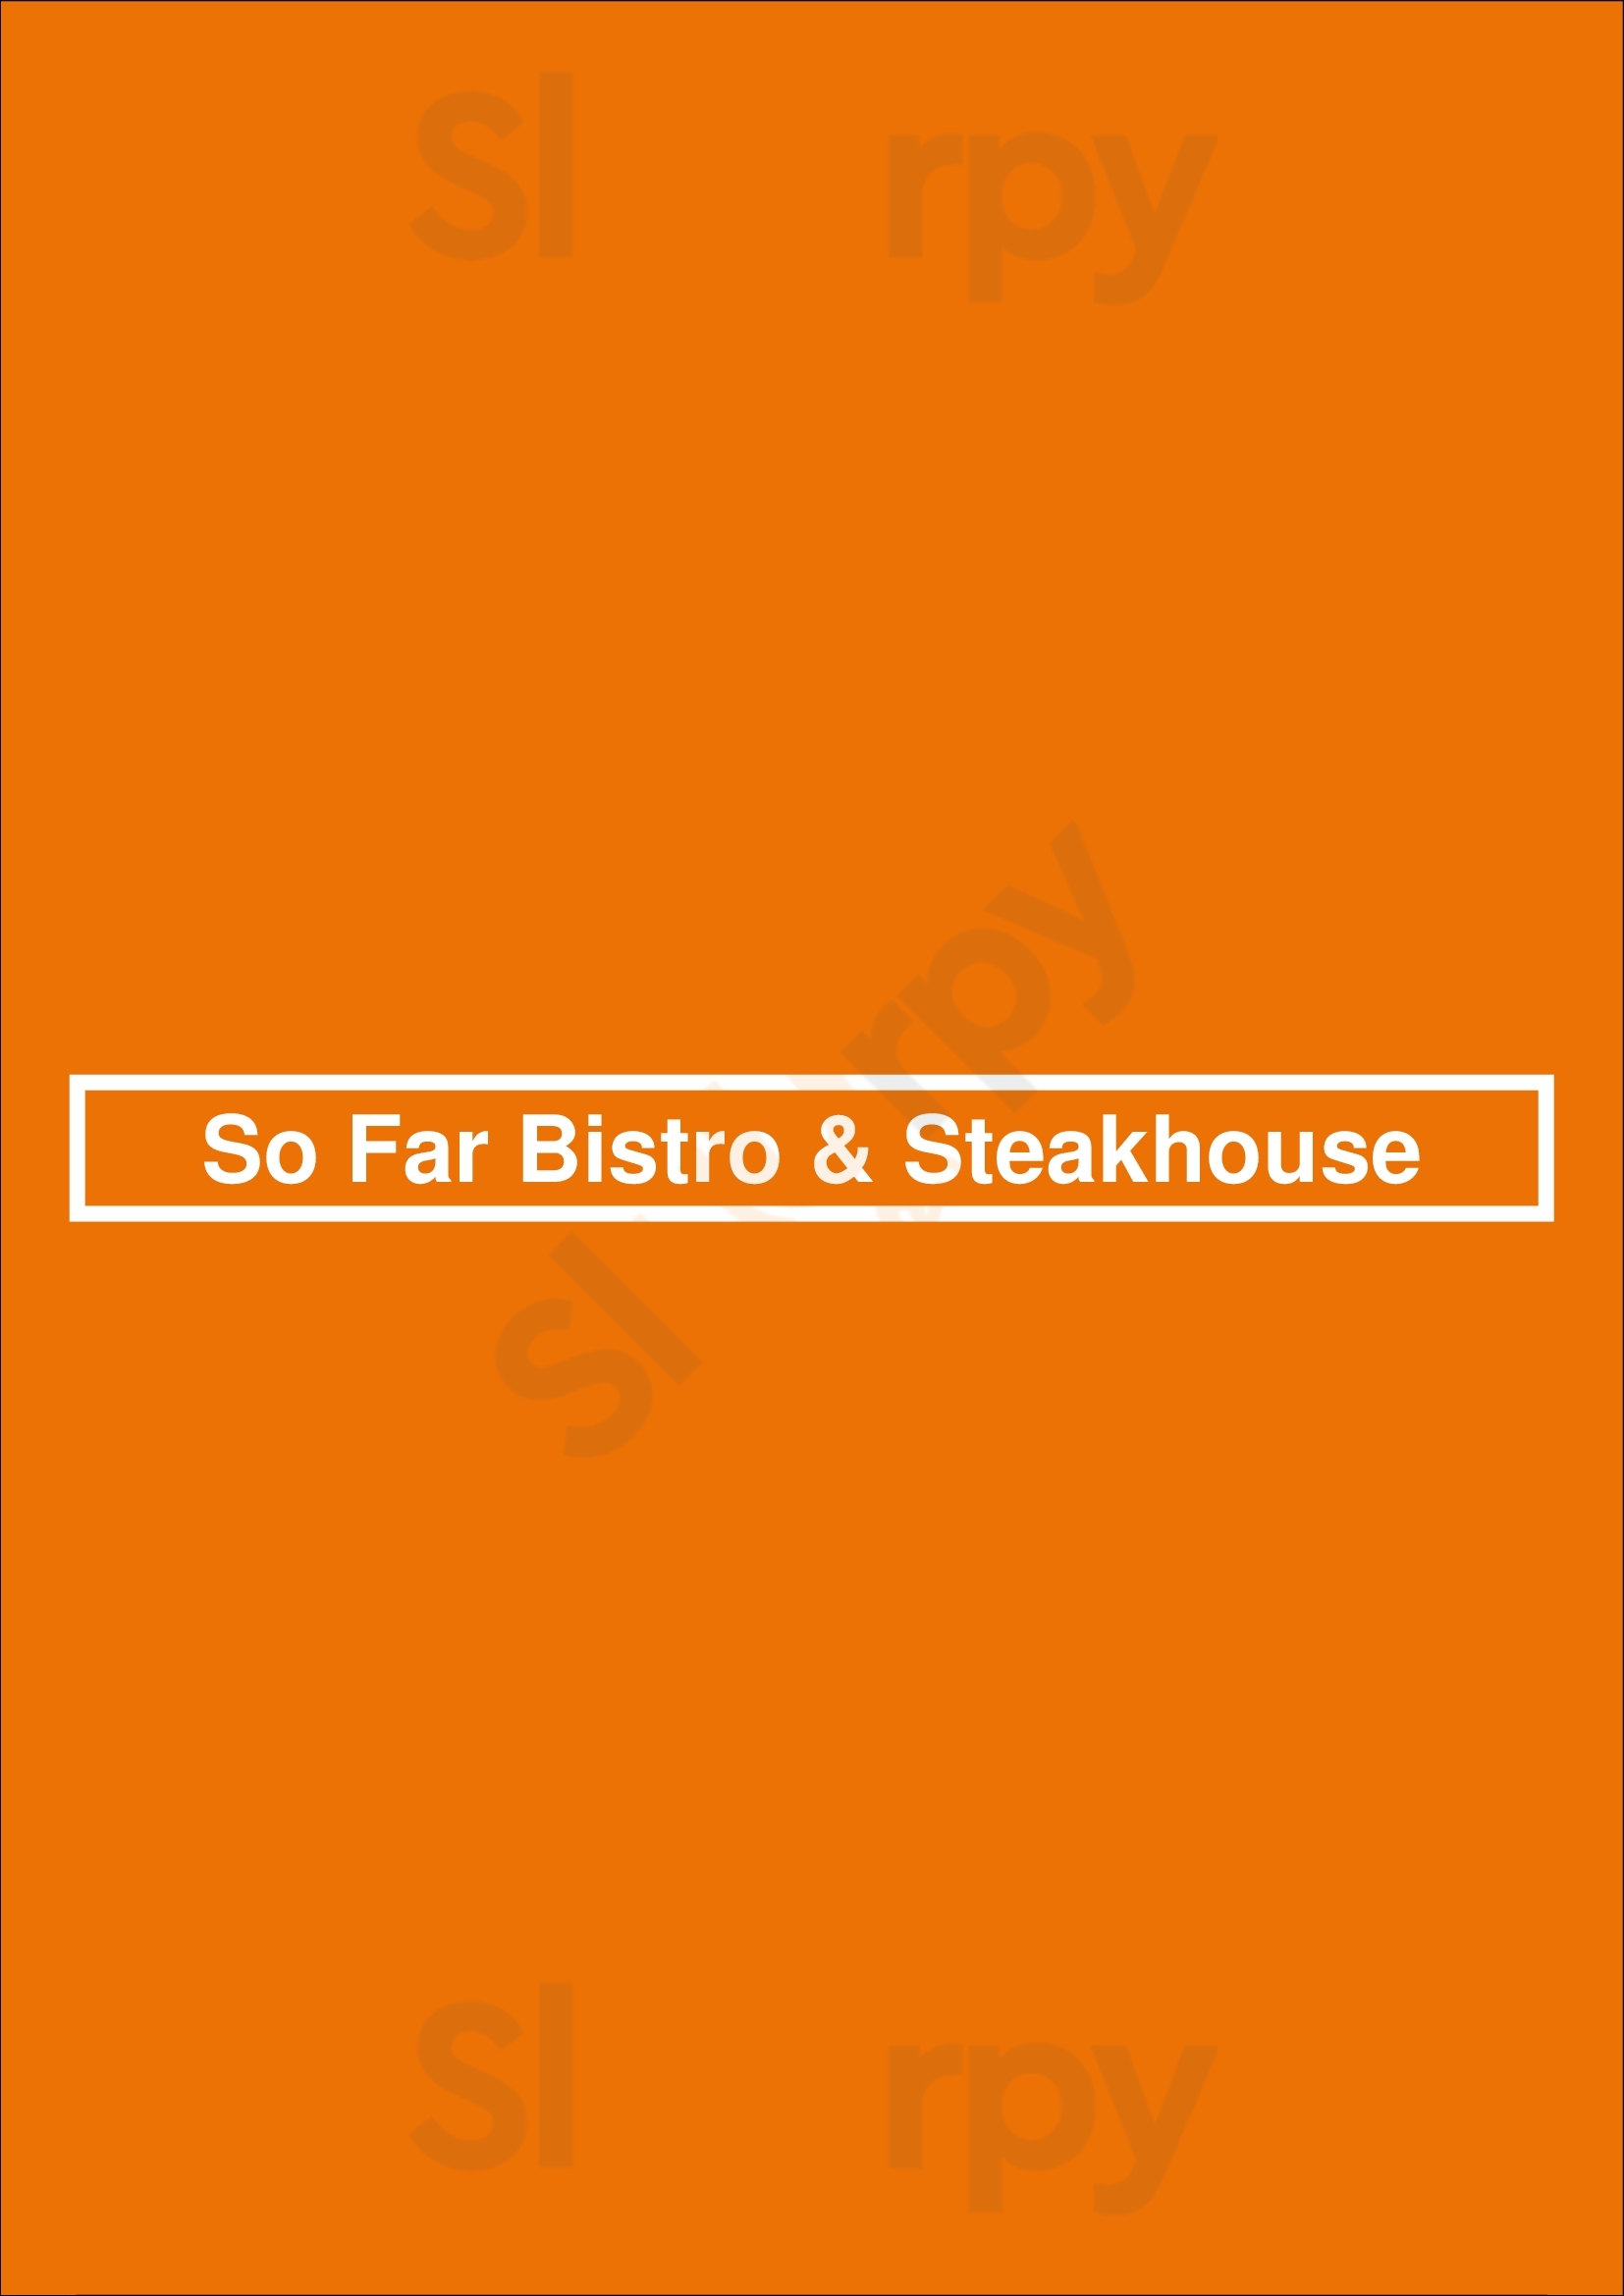 So Far Bistro & Steakhouse Funchal Menu - 1